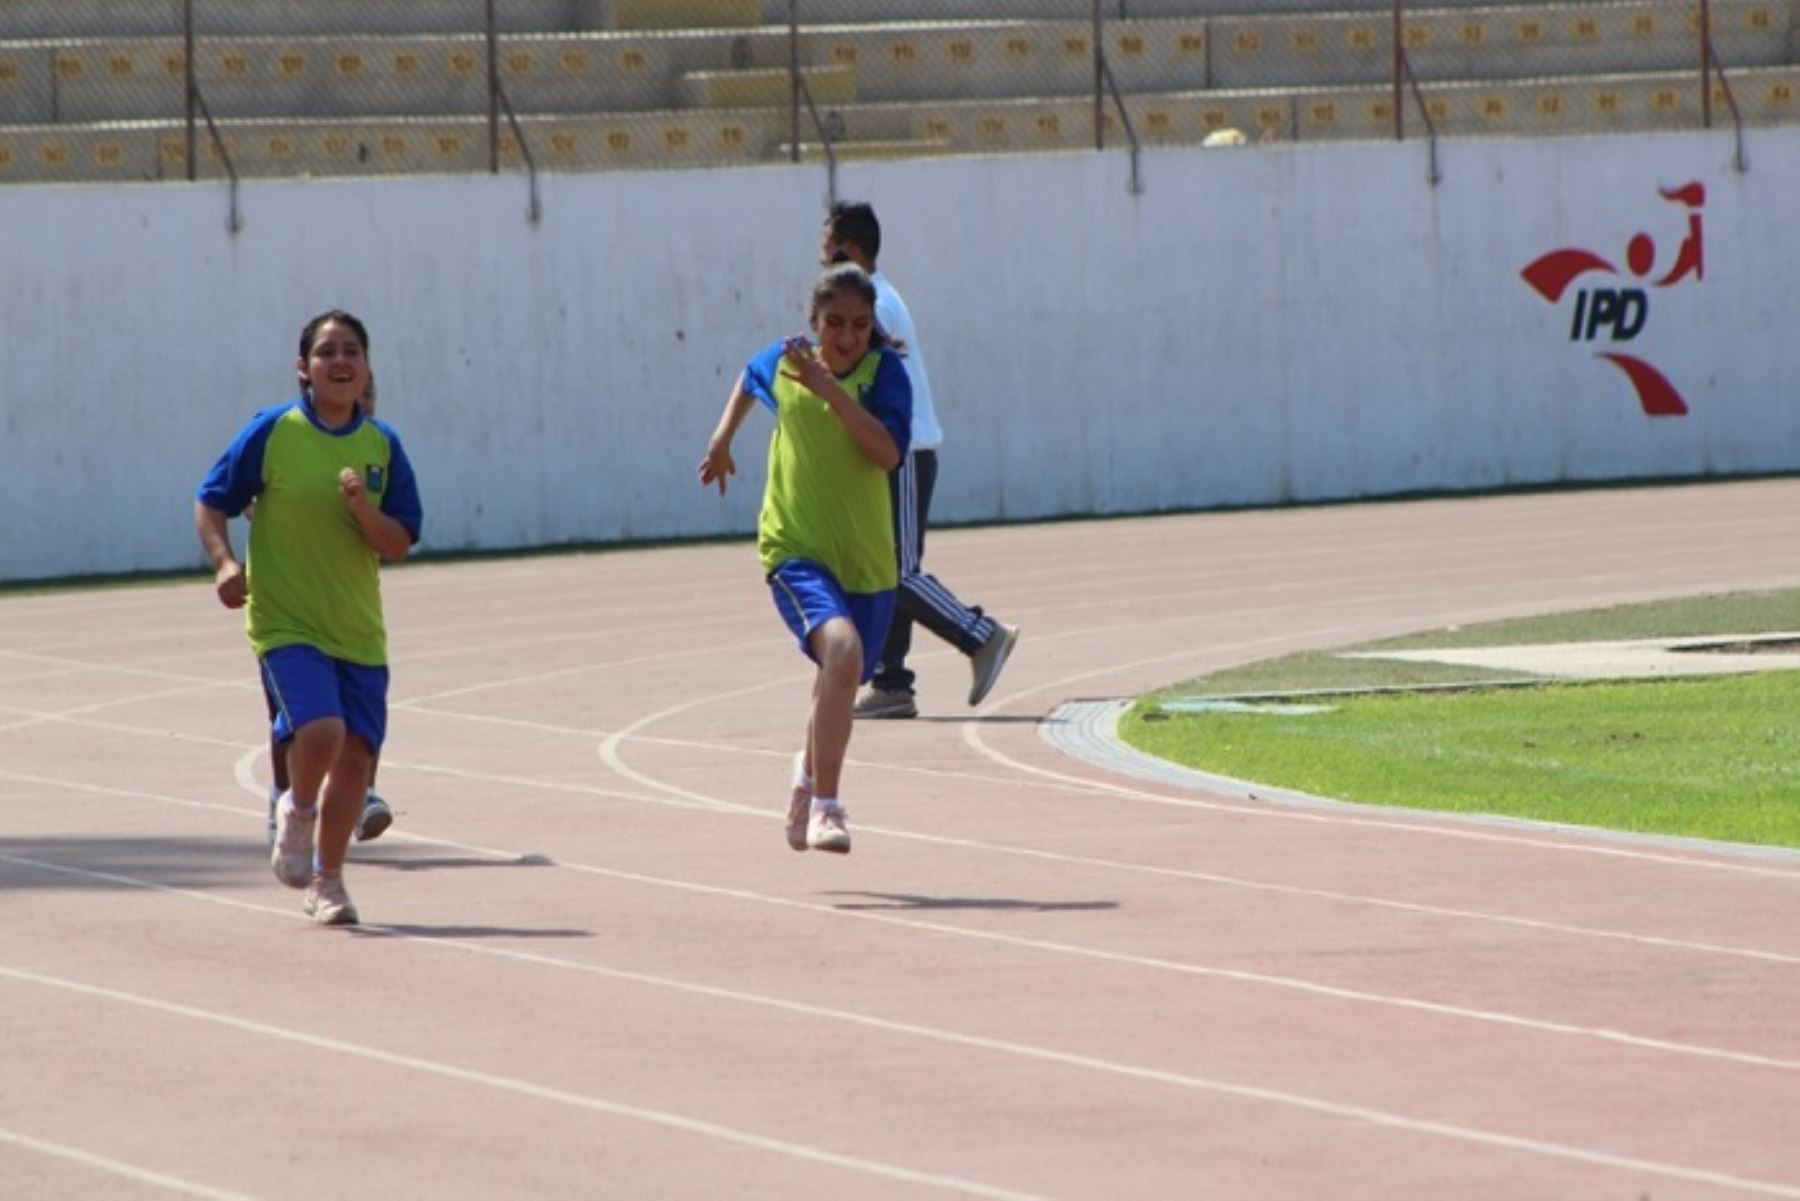 María Rosaisela ha ganado medallas de oro y plata en las olimpiadas regionales, así como una medalla de oro por ser la mejor deportista con habilidades diferentes.